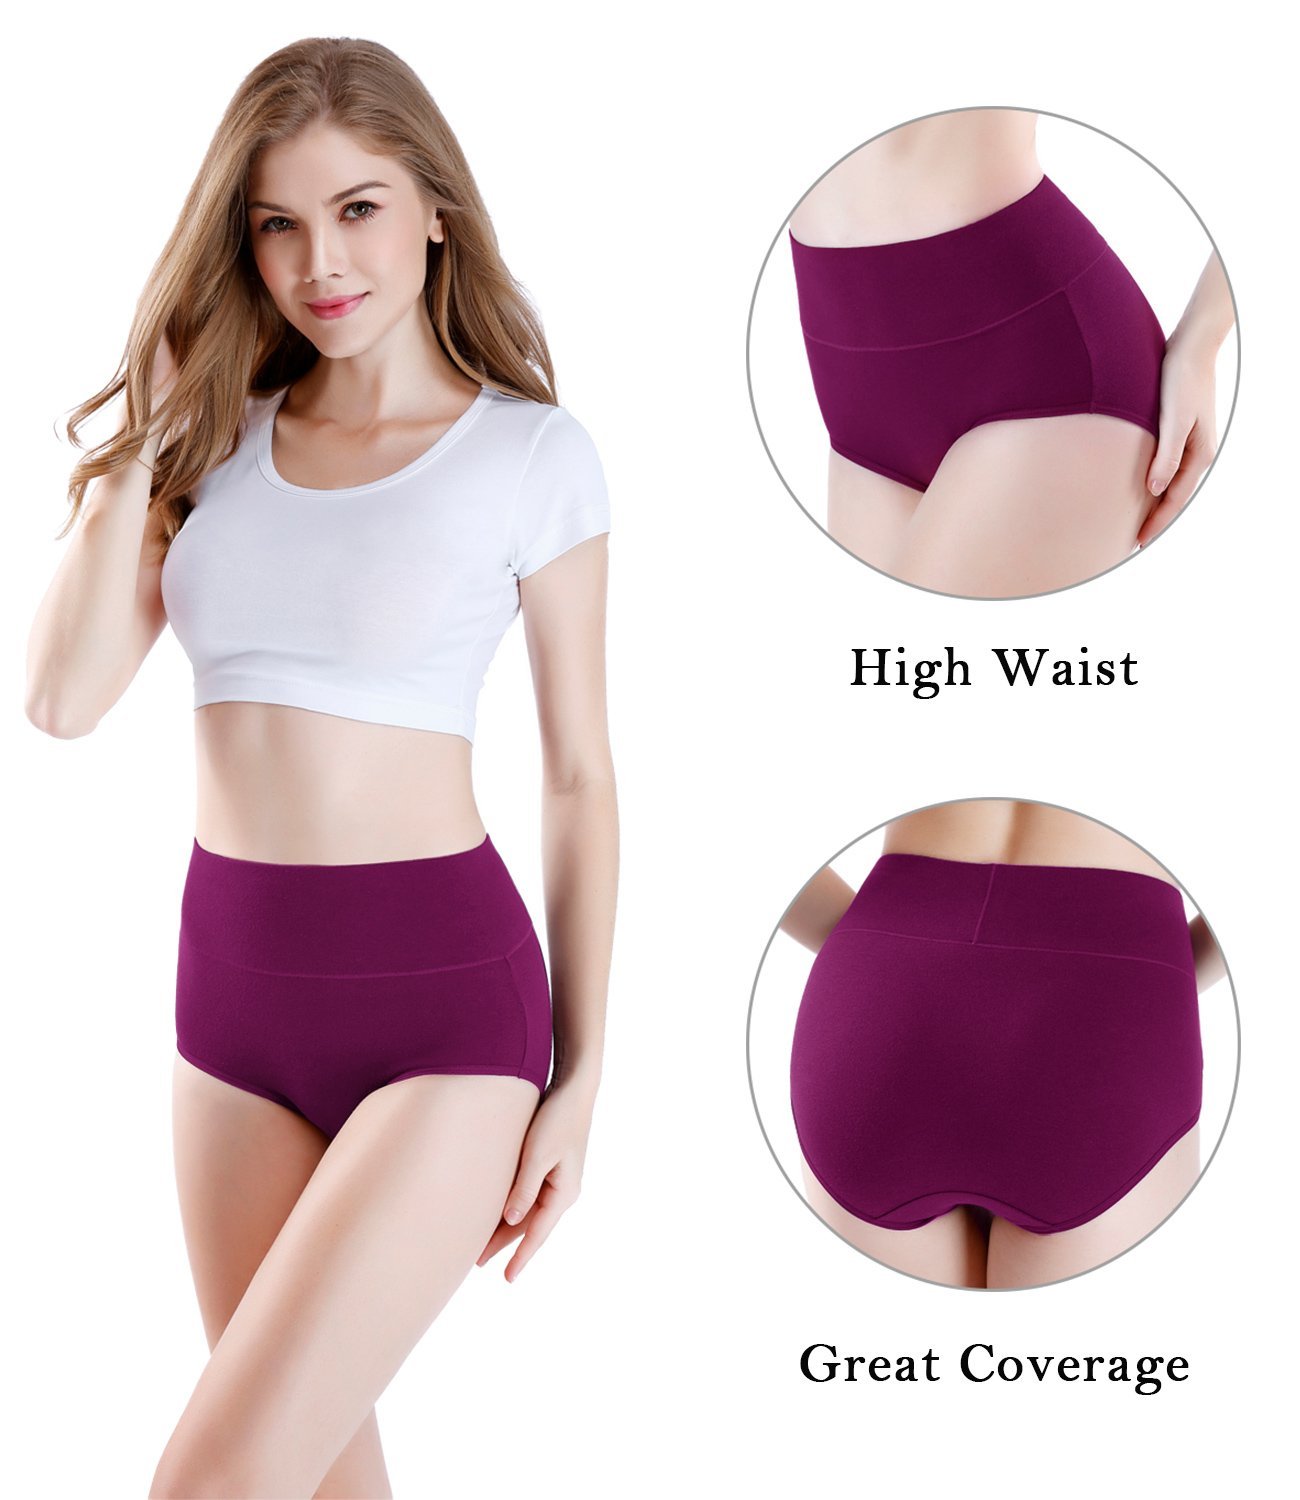 wirarpa Women's Super High Waisted Briefs Underwear Cotton Full